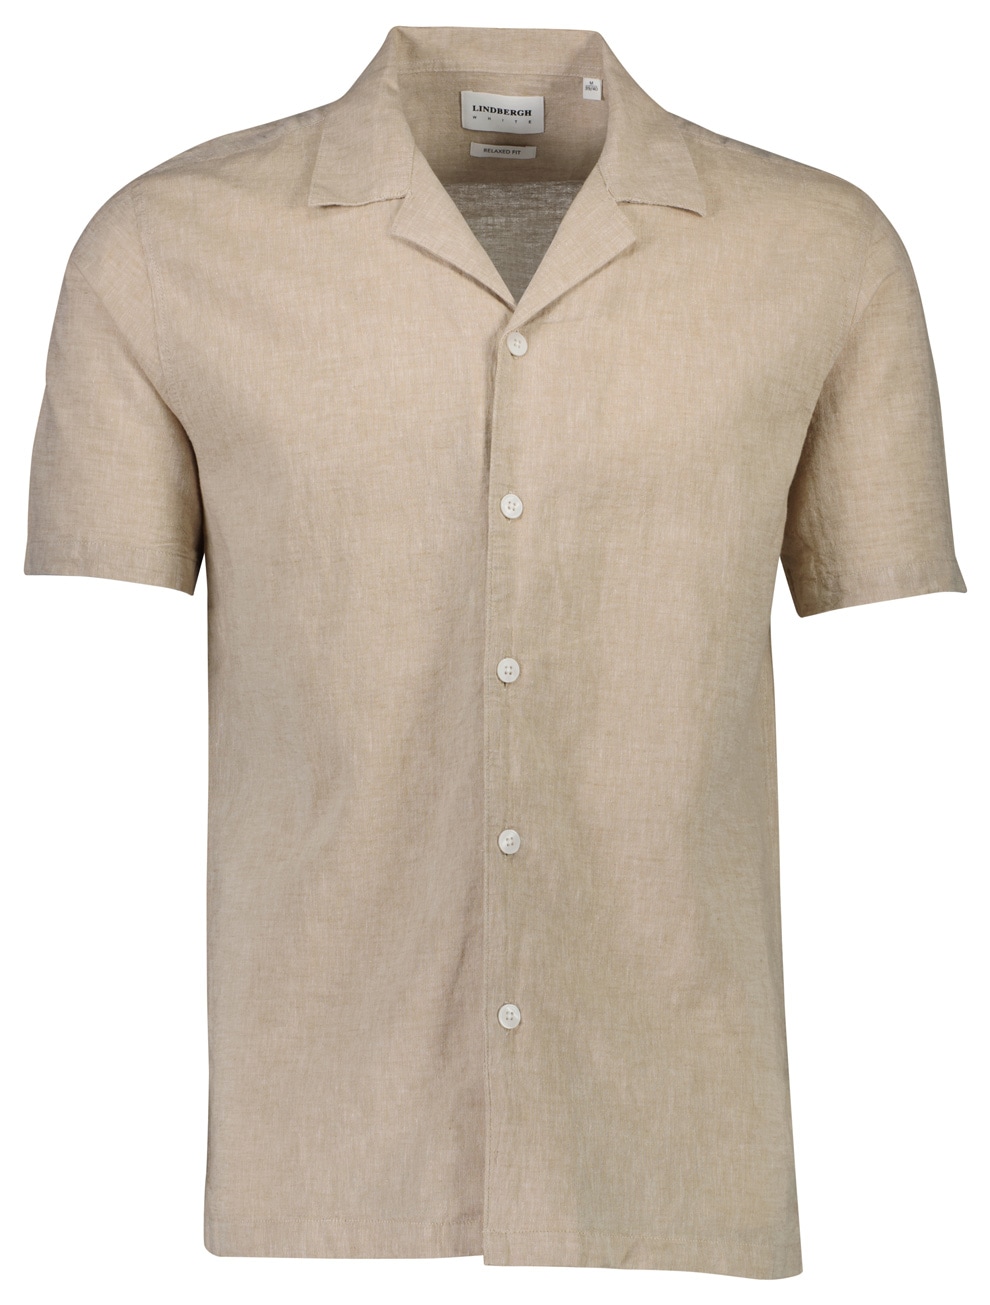 LINDBERGH Kurzarmhemd, aus einem Leinen-Baumwoll-Mix mit Knopfleiste